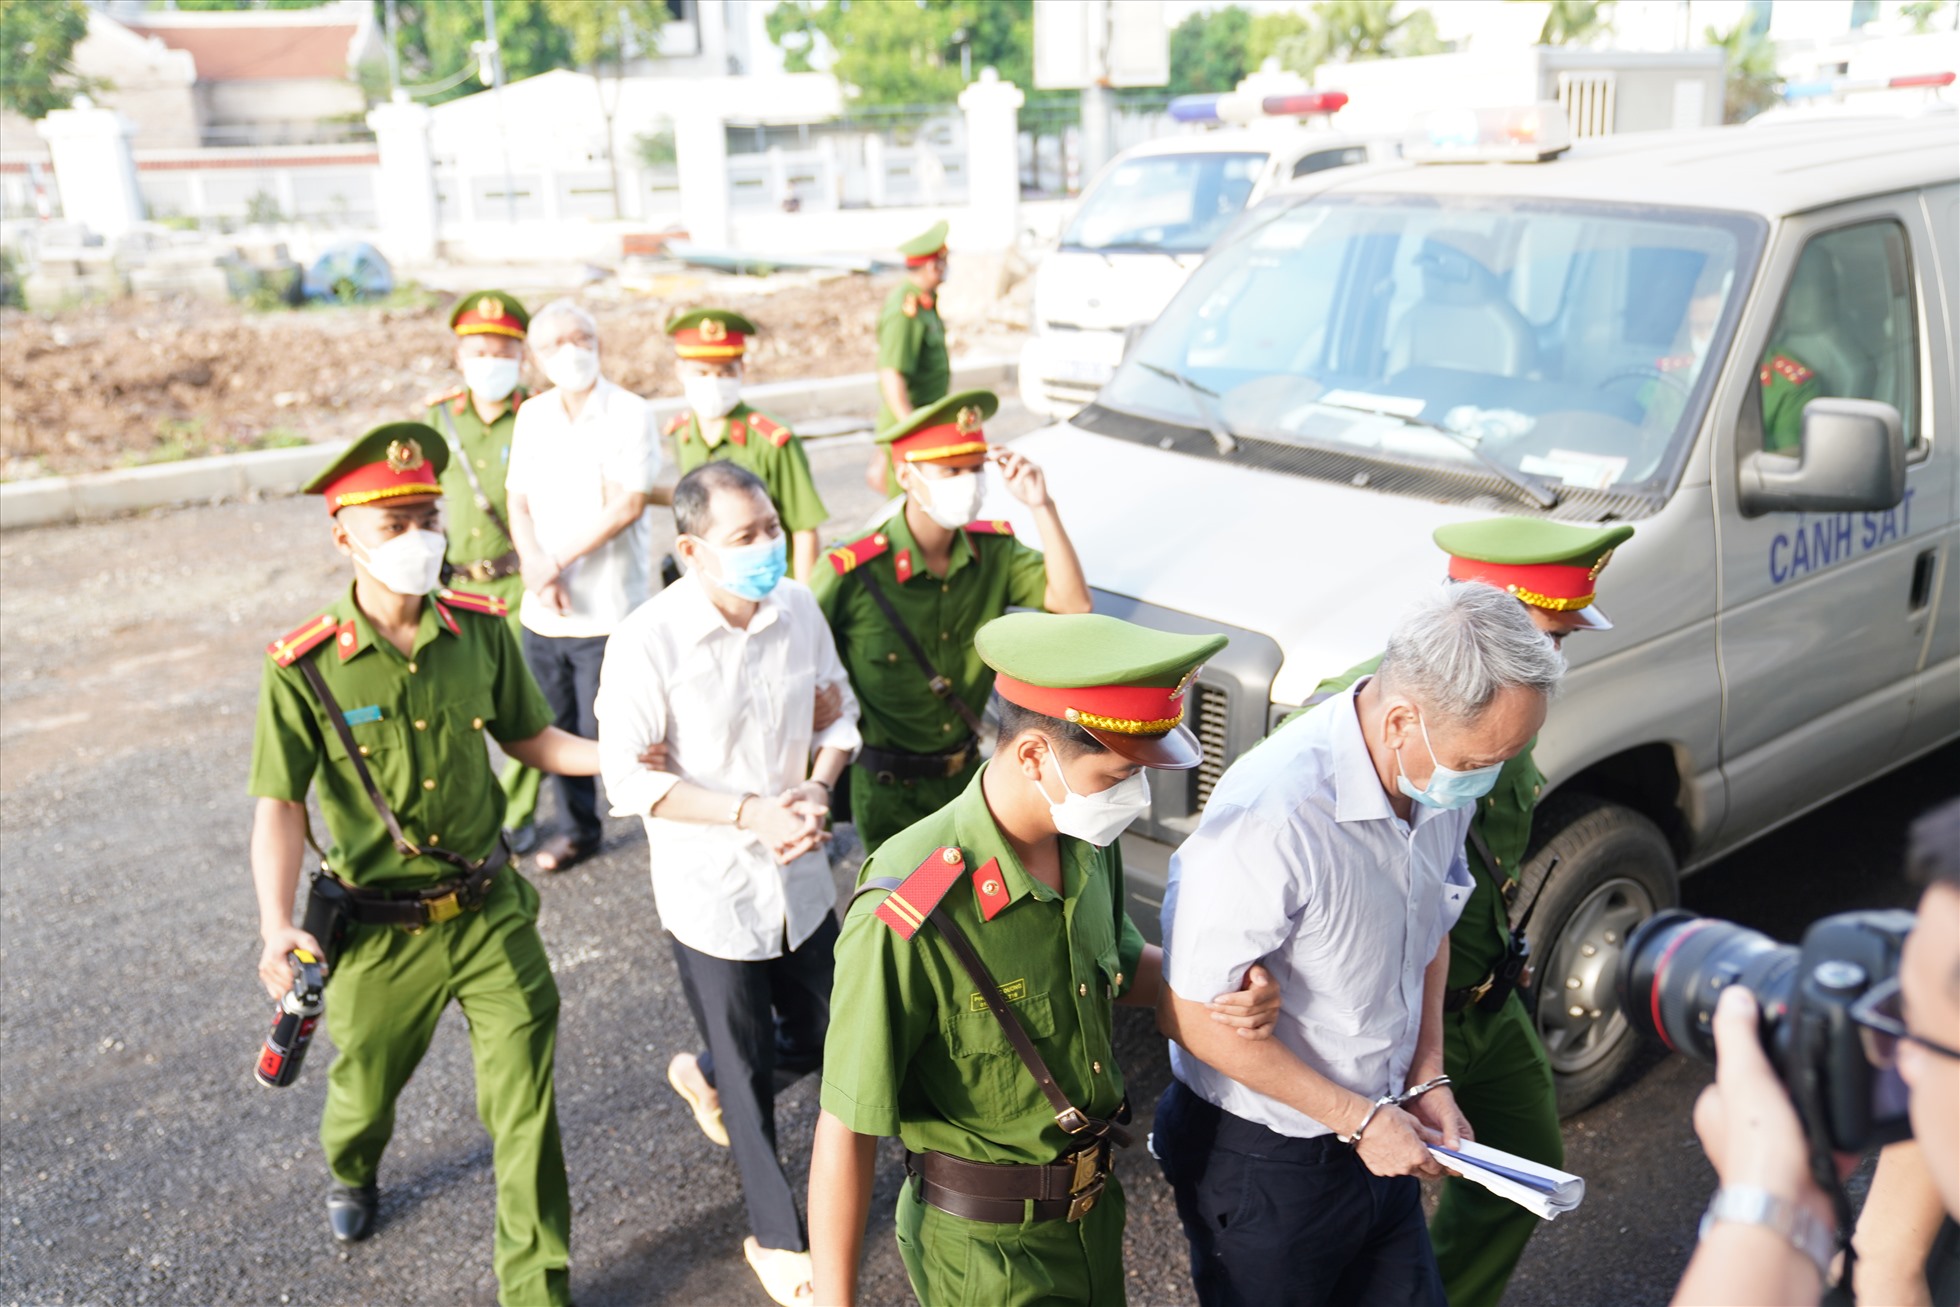 Có 28 bị cáo bị đưa ra xét xử tại TAND Hà Nội về các tội  “Vi phạm quy định về quản lý, sử dụng tài sản Nhà nước gây thất thoát, lãng phí“, “Tham ô tài sản“... Ảnh: V.D